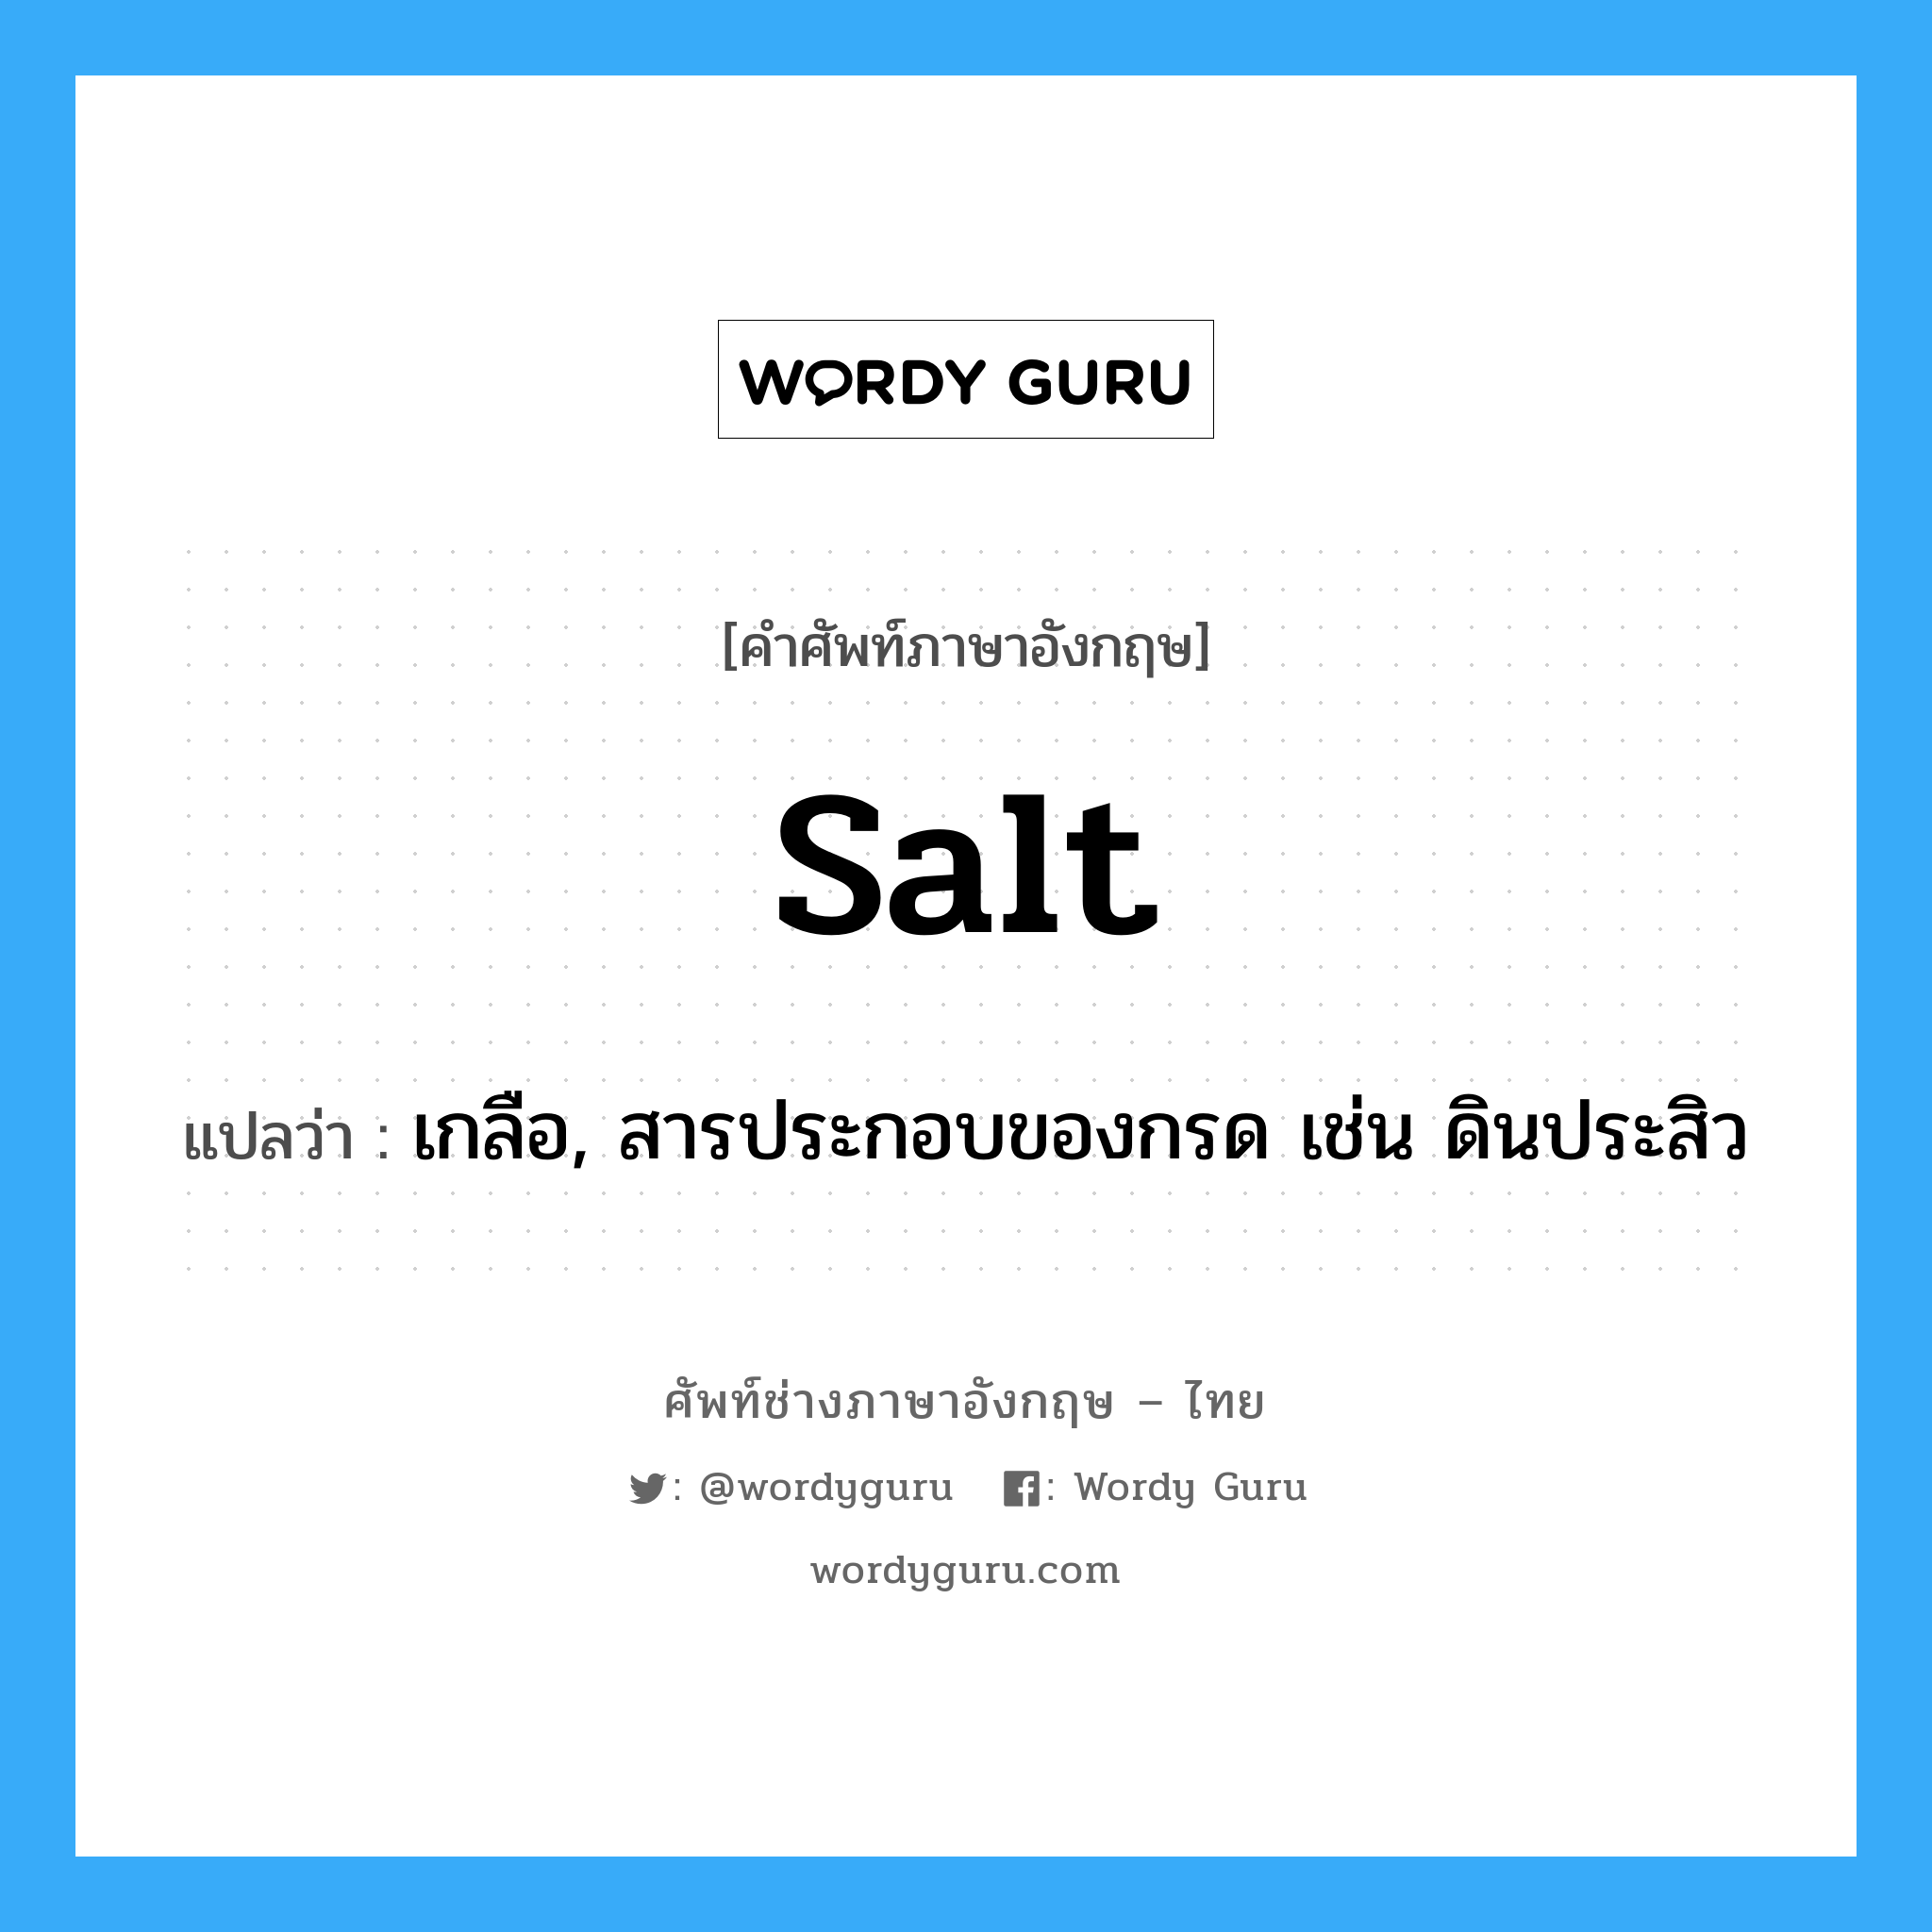 เกลือ, สารประกอบของกรด เช่น ดินประสิว ภาษาอังกฤษ?, คำศัพท์ช่างภาษาอังกฤษ - ไทย เกลือ, สารประกอบของกรด เช่น ดินประสิว คำศัพท์ภาษาอังกฤษ เกลือ, สารประกอบของกรด เช่น ดินประสิว แปลว่า salt